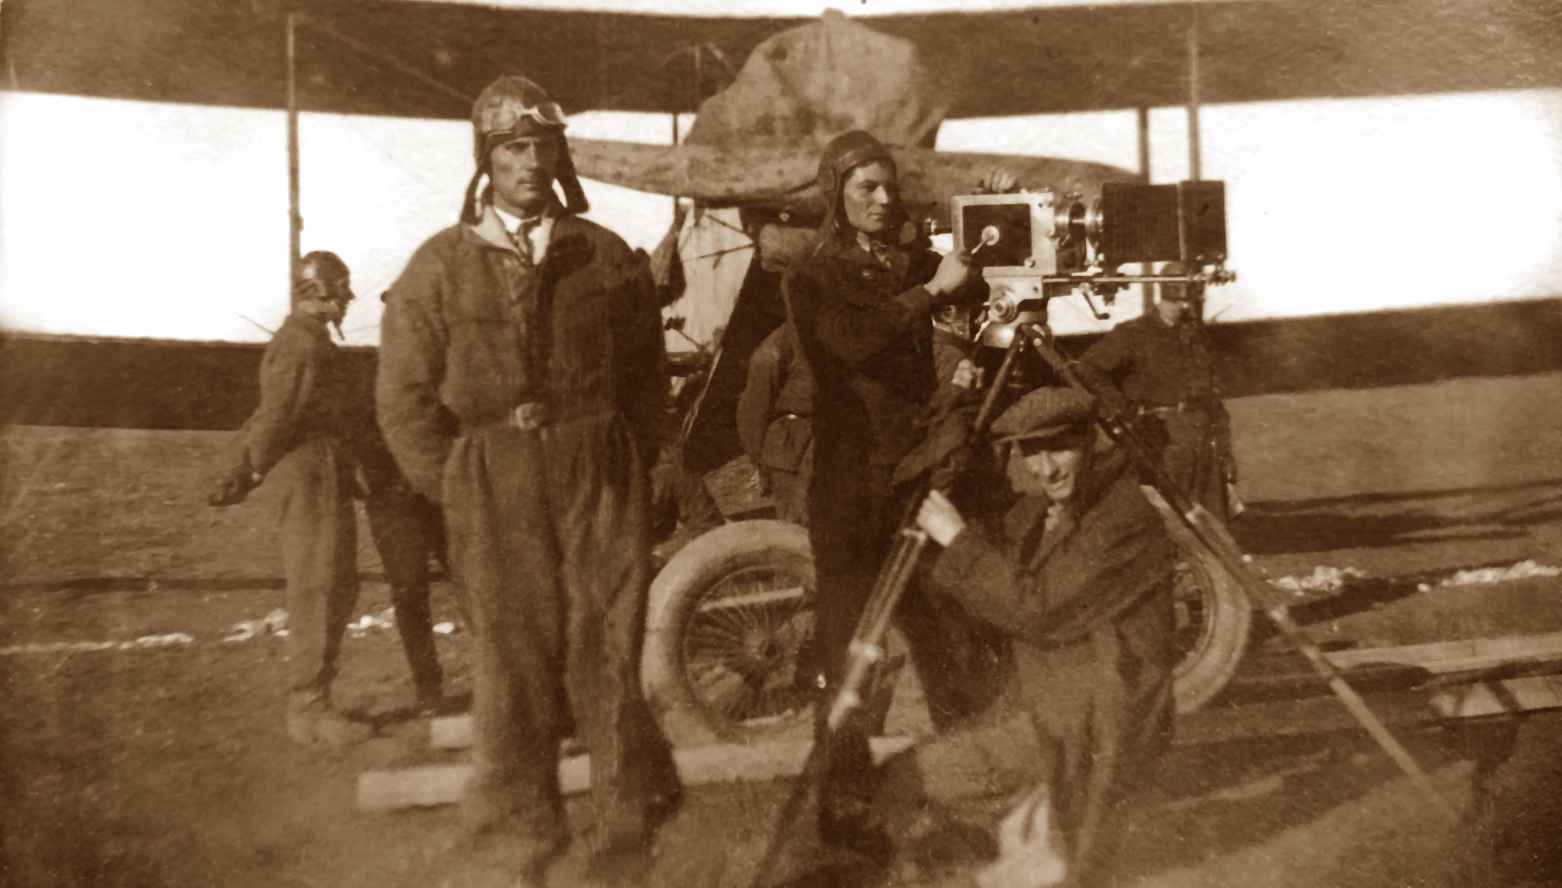 Оператор воздушных съемок Георгий Химченко (стоит в центре у кинокамеры). 1935 год (предположительно). Фото из семейного архива.